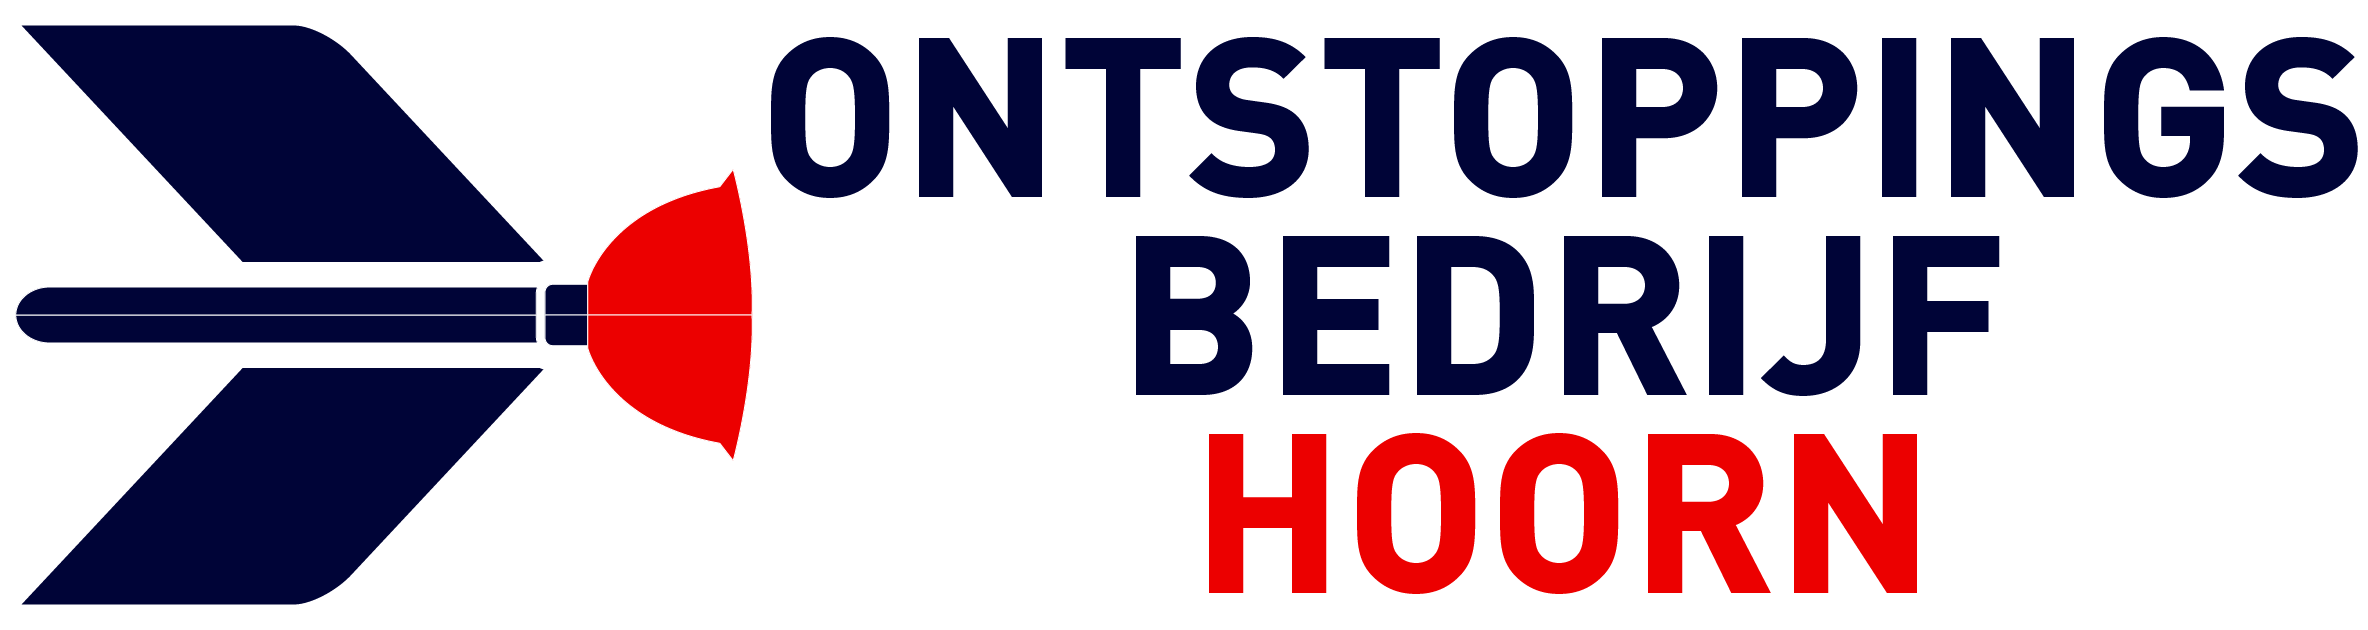 Ontstoppingsbedrijf Hoorn logo